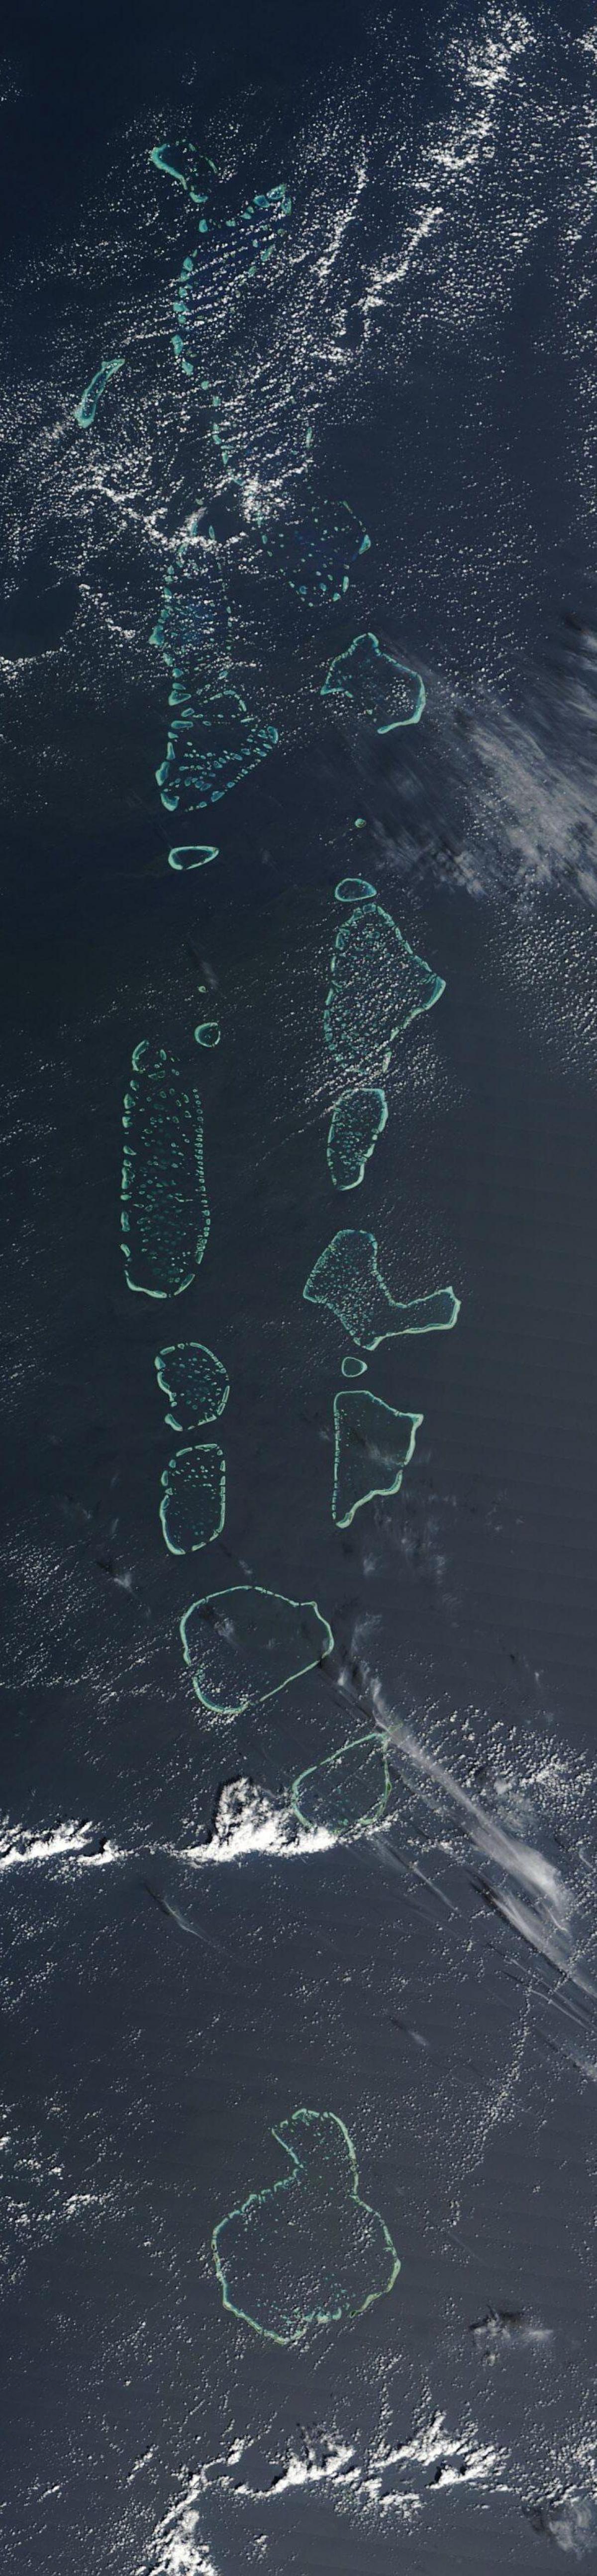 מפה של האיים המלדיביים לווין.